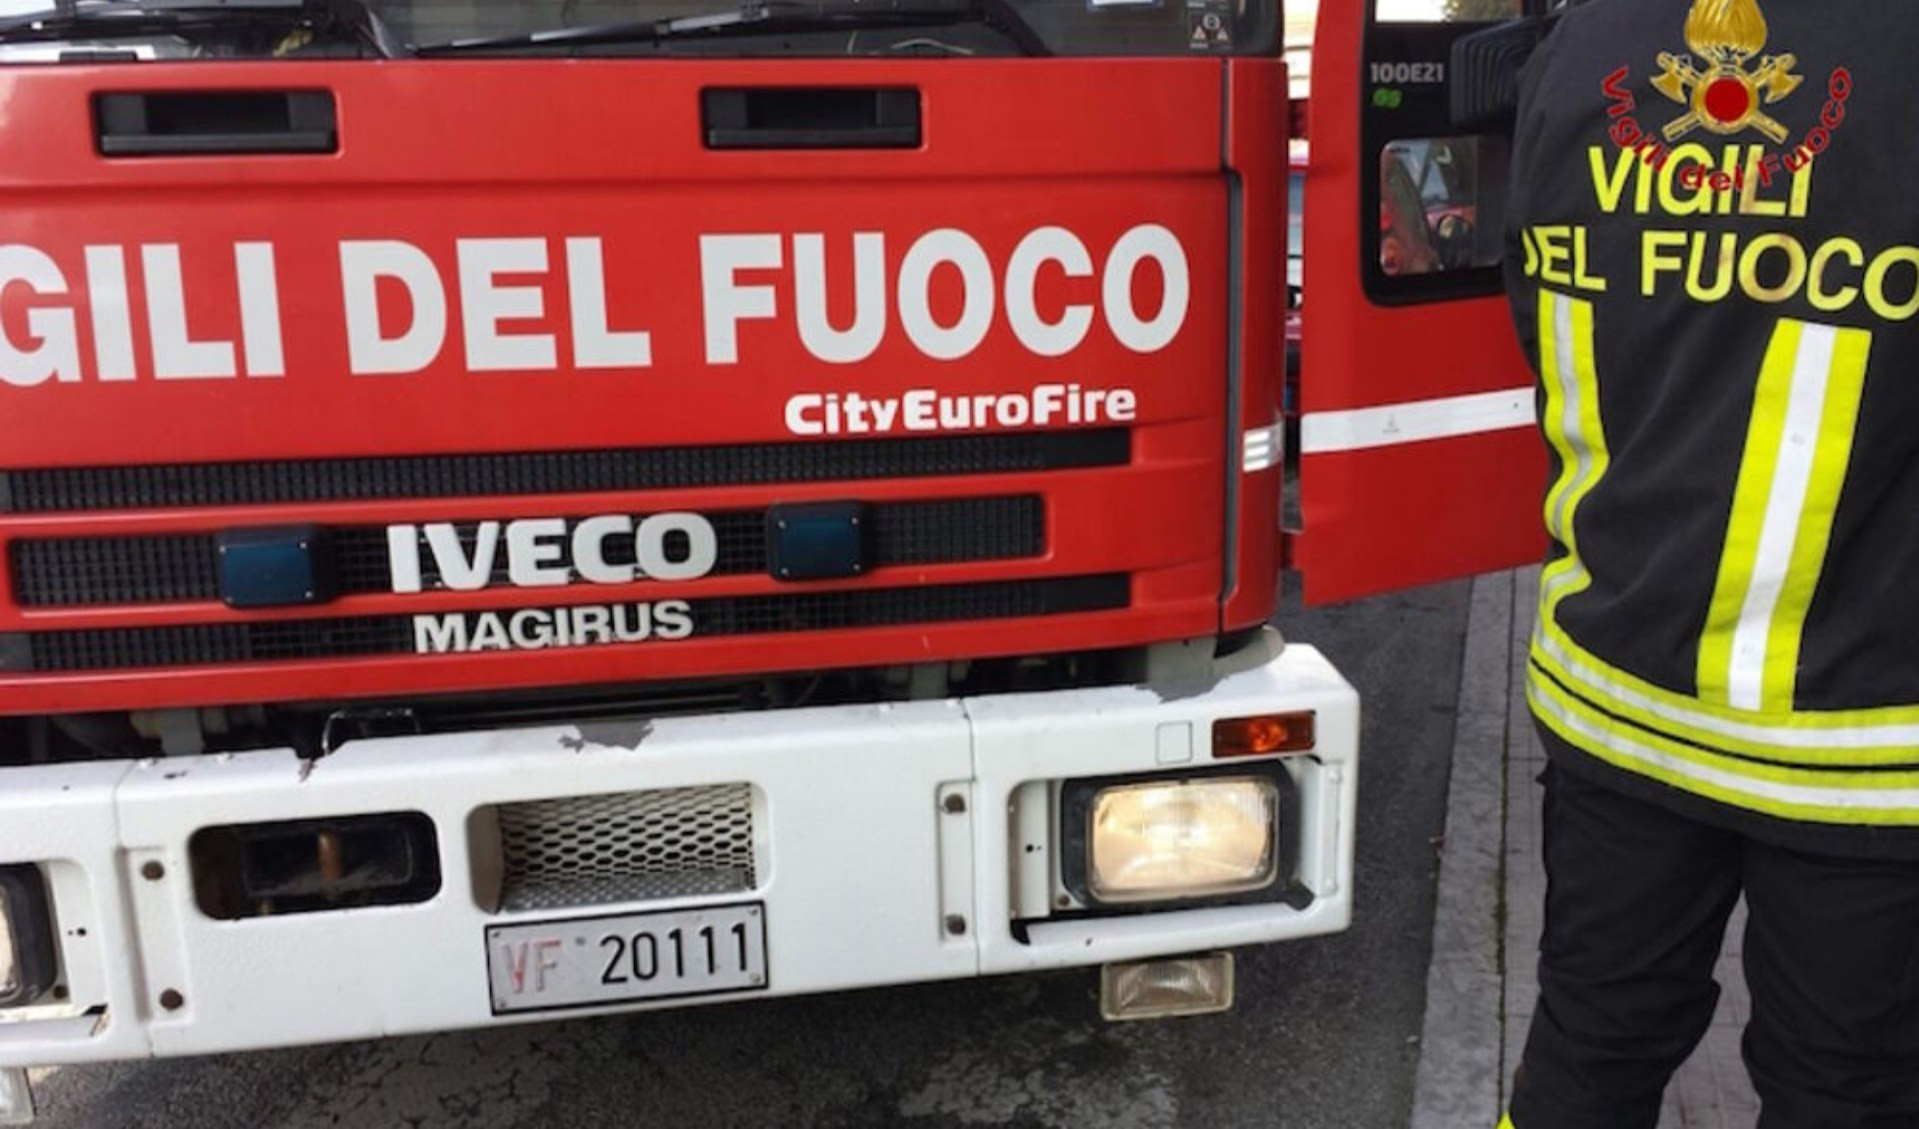 Fuga di gas: notte in bianco per i residenti di una palazzina a Genova